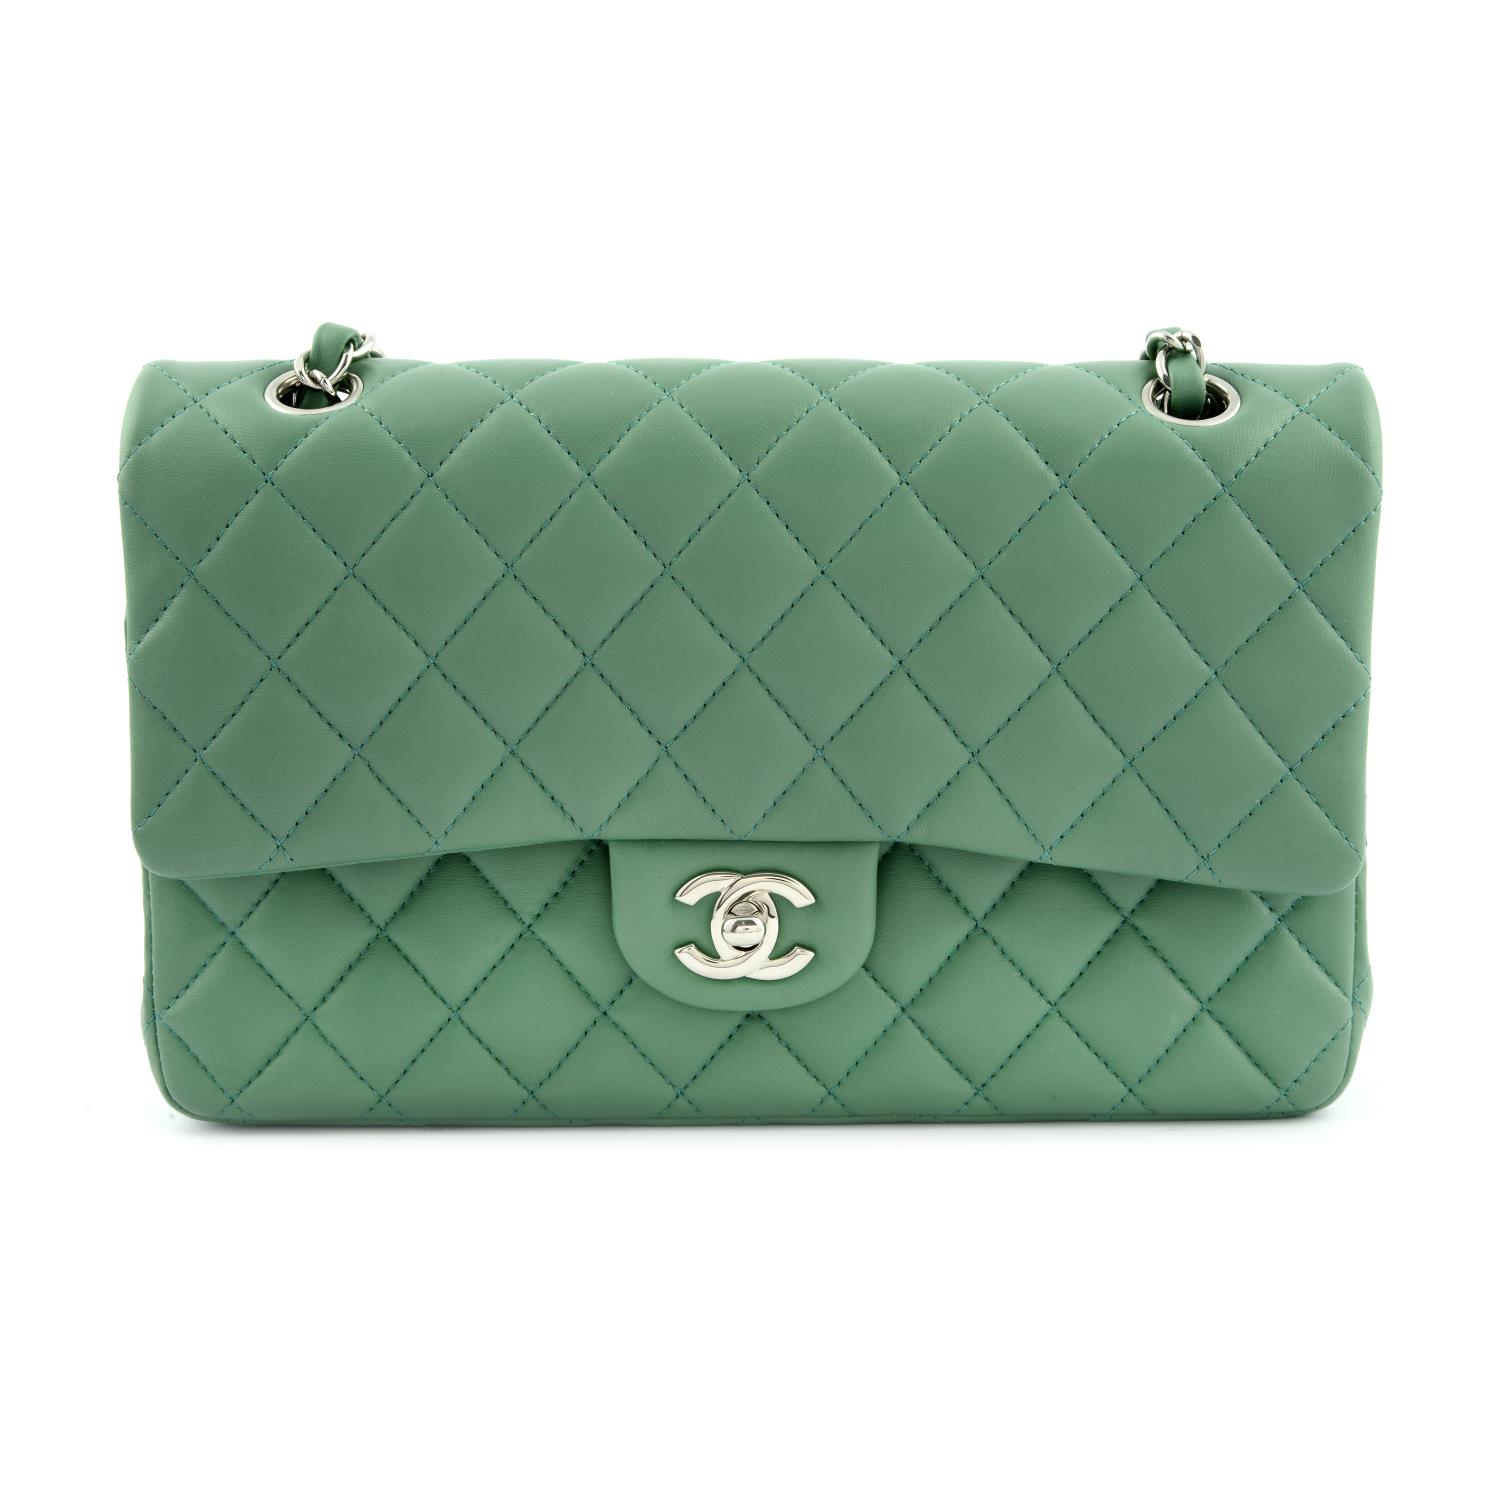 CHANEL - a green Medium Classic Double Flap handbag.